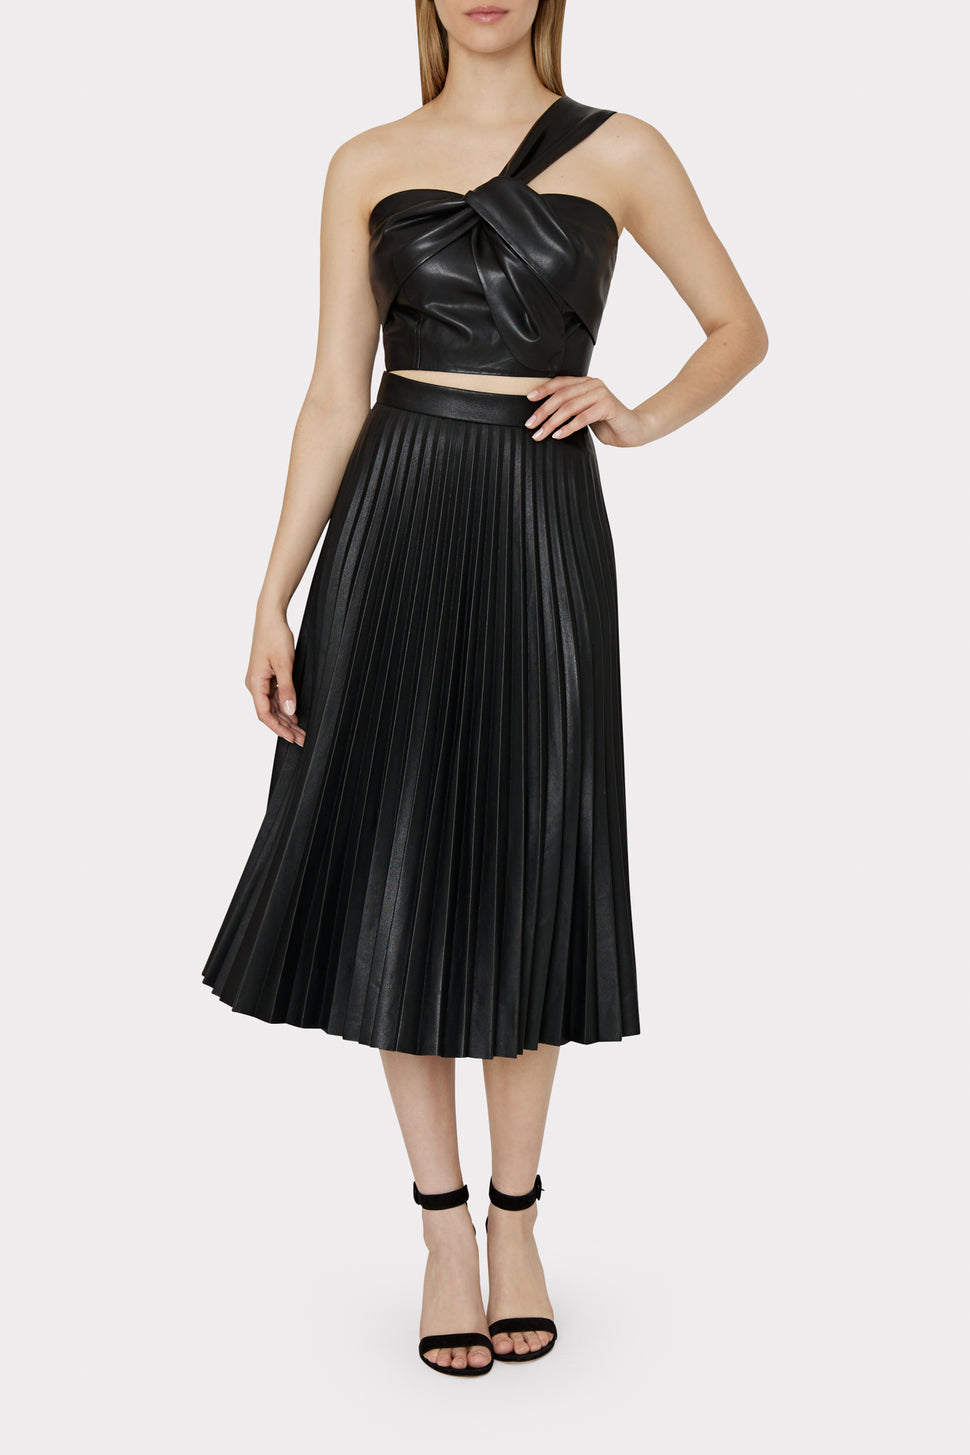 BLACK PLEATED SKIRT  Black pleated skirt, Pleated skirt, Skirts